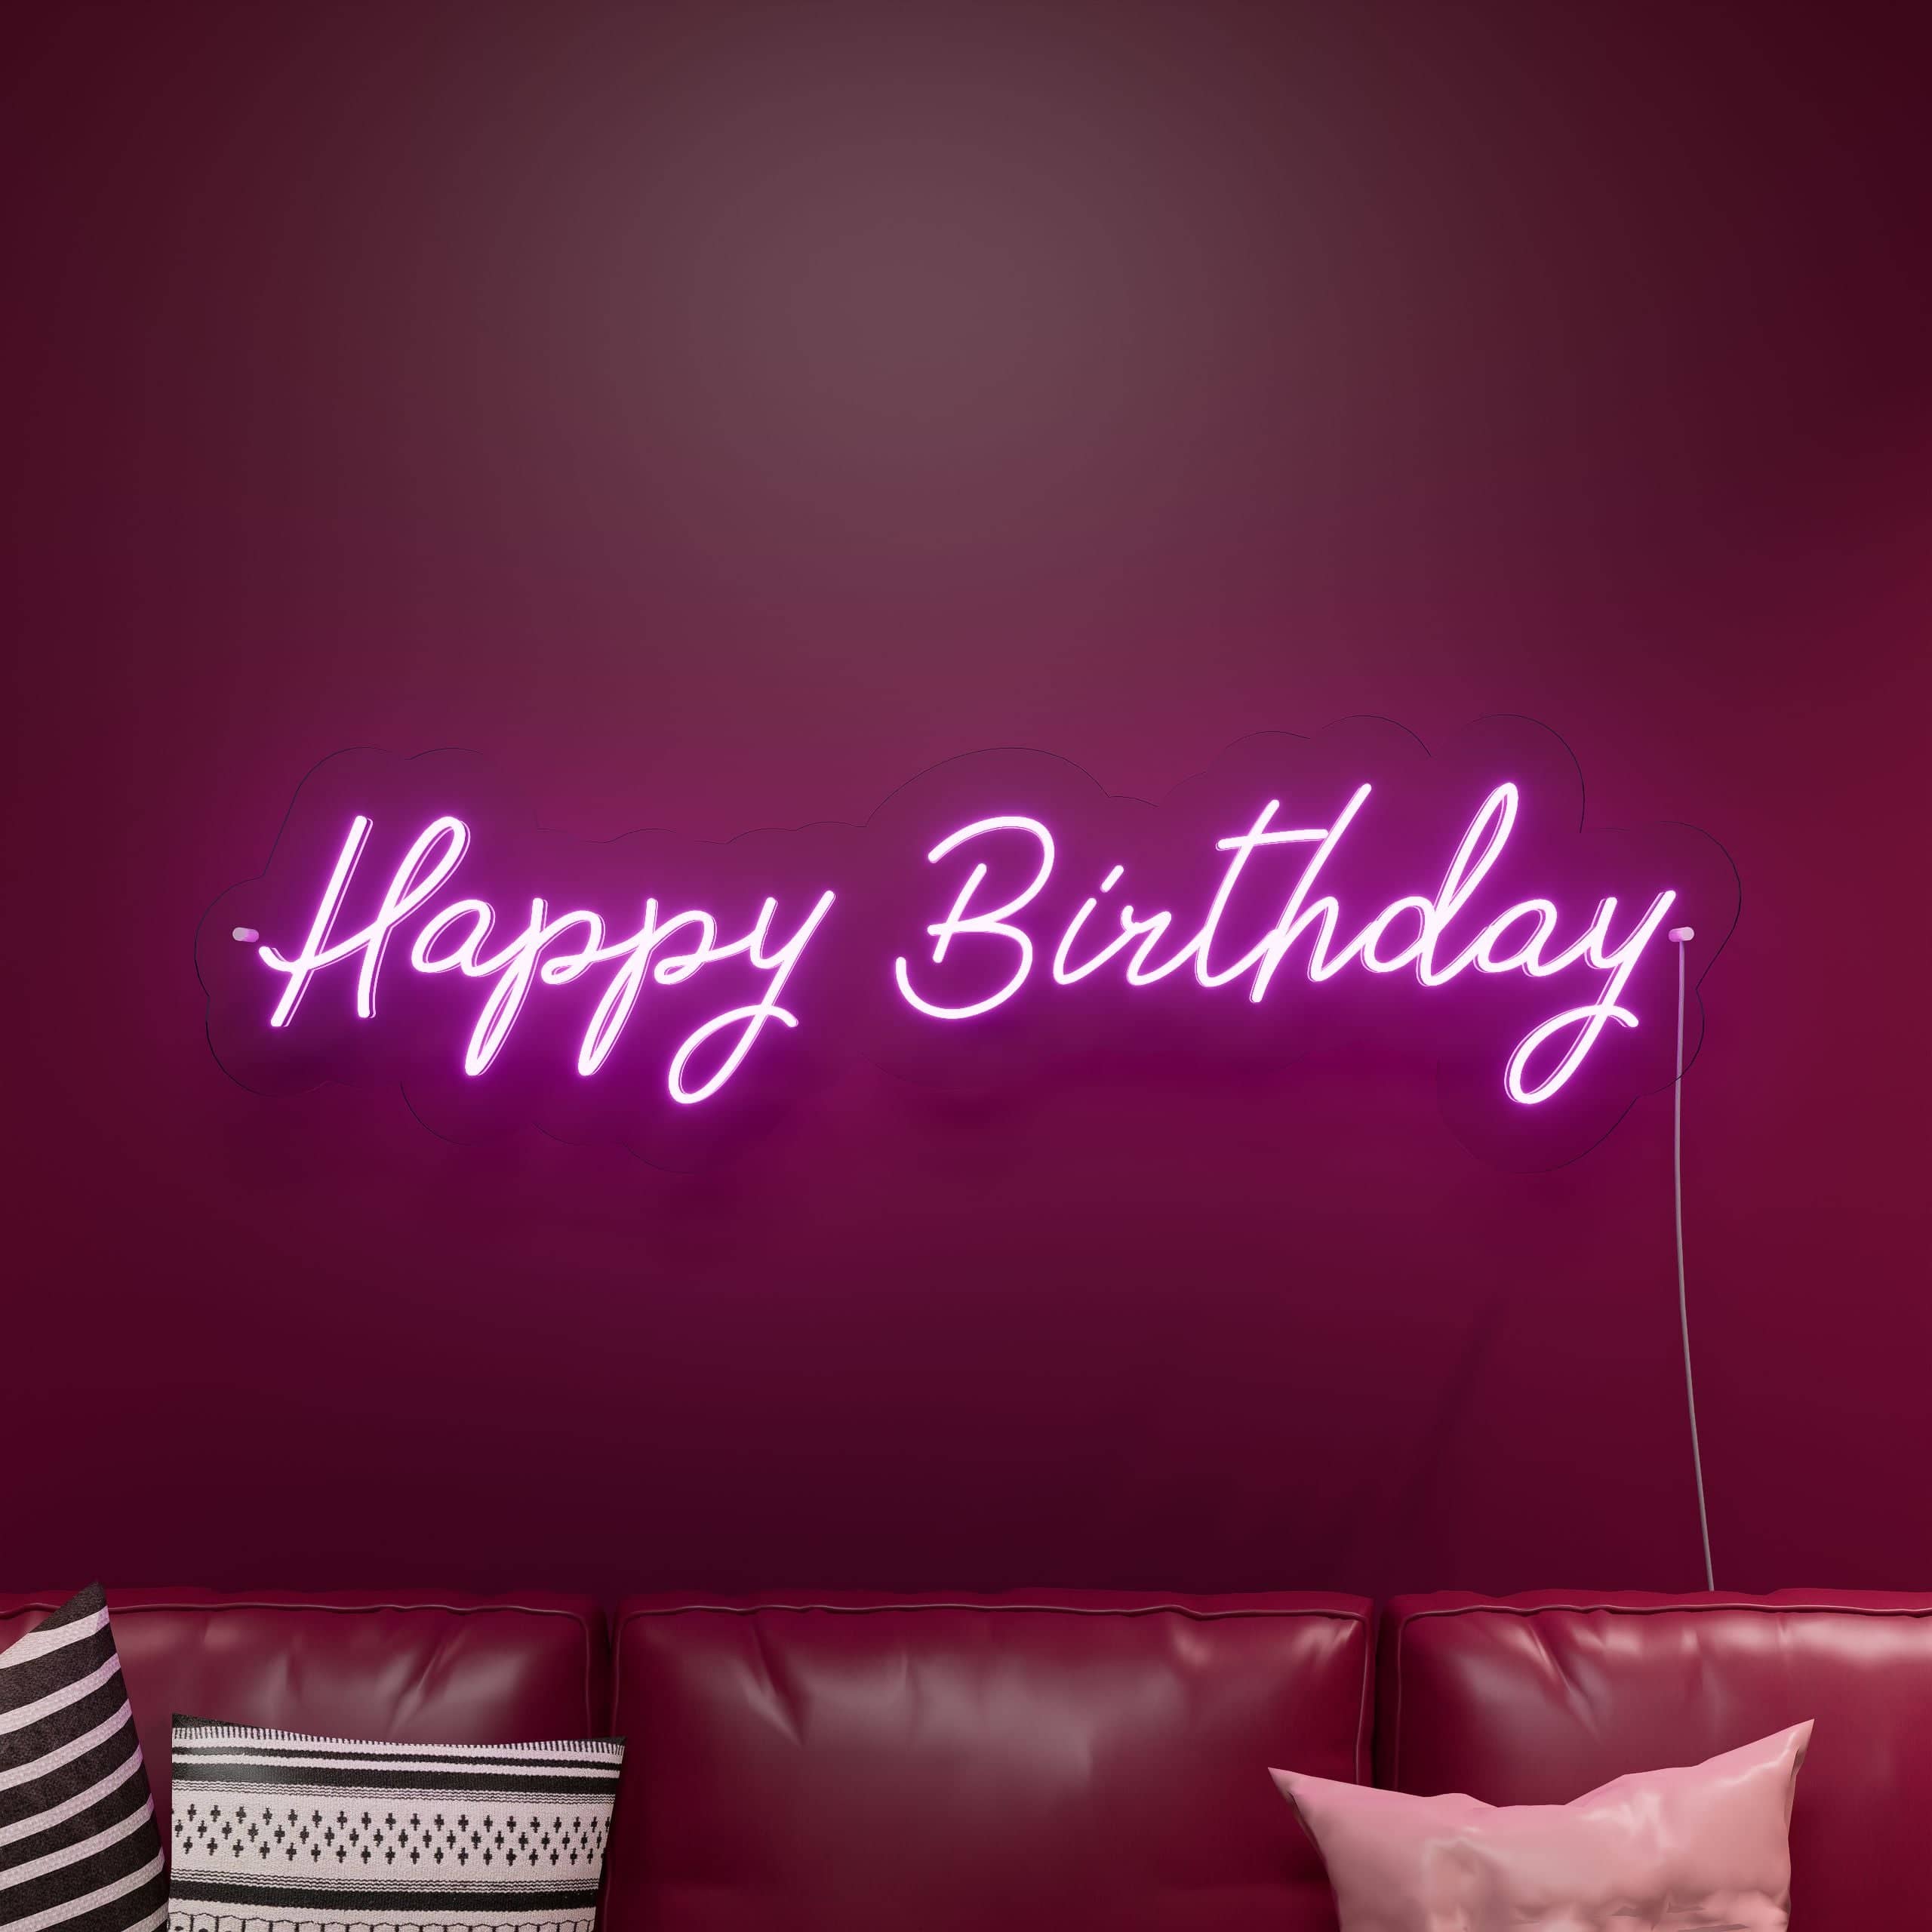 brighten-your-birthday!-neon-sign-lite